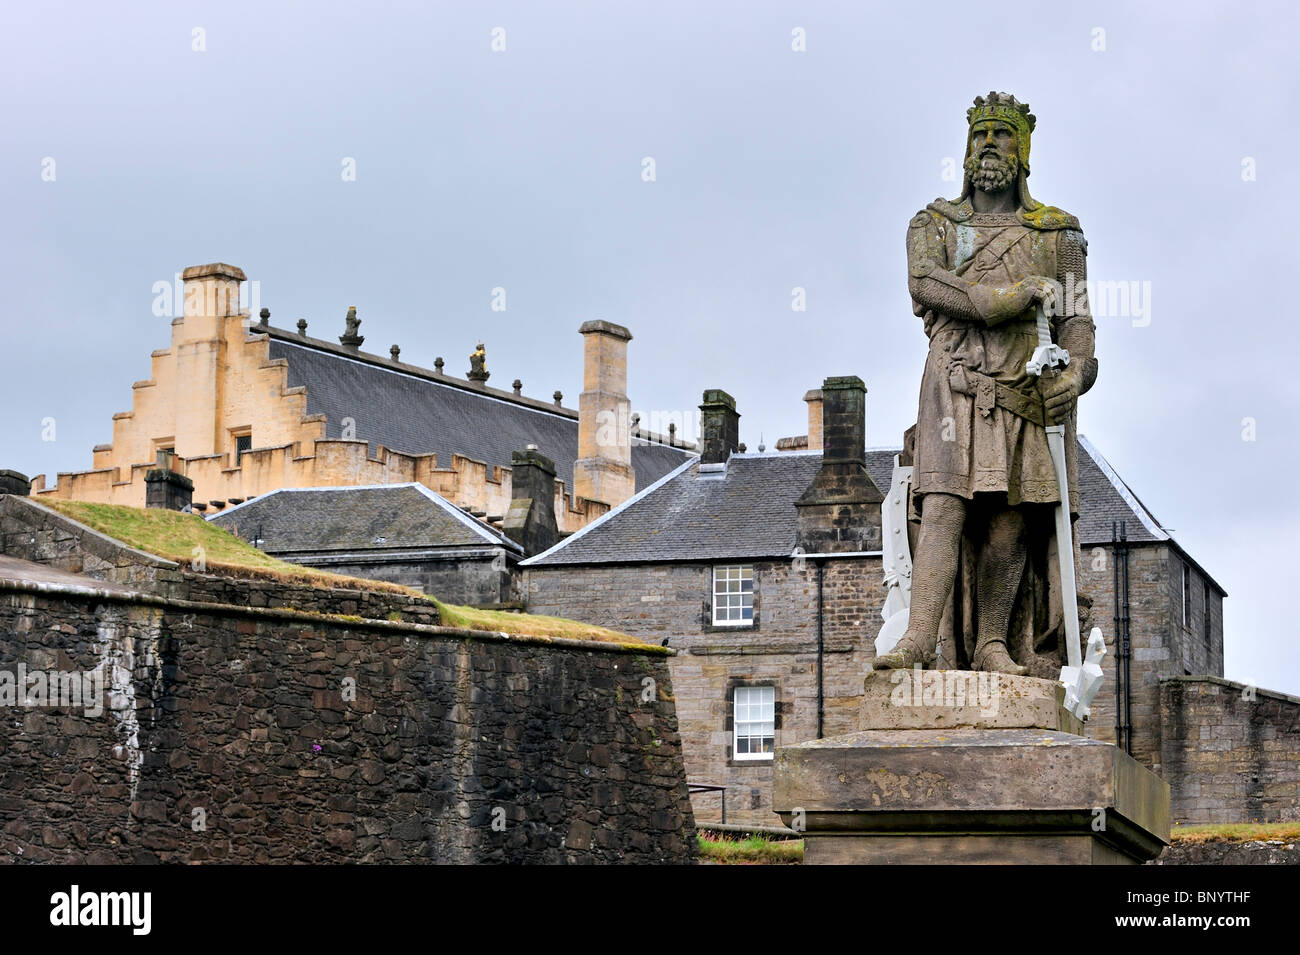 Statua di Robert the Bruce sul castello spianata del castello di Stirling, Scozia, Regno Unito Foto Stock